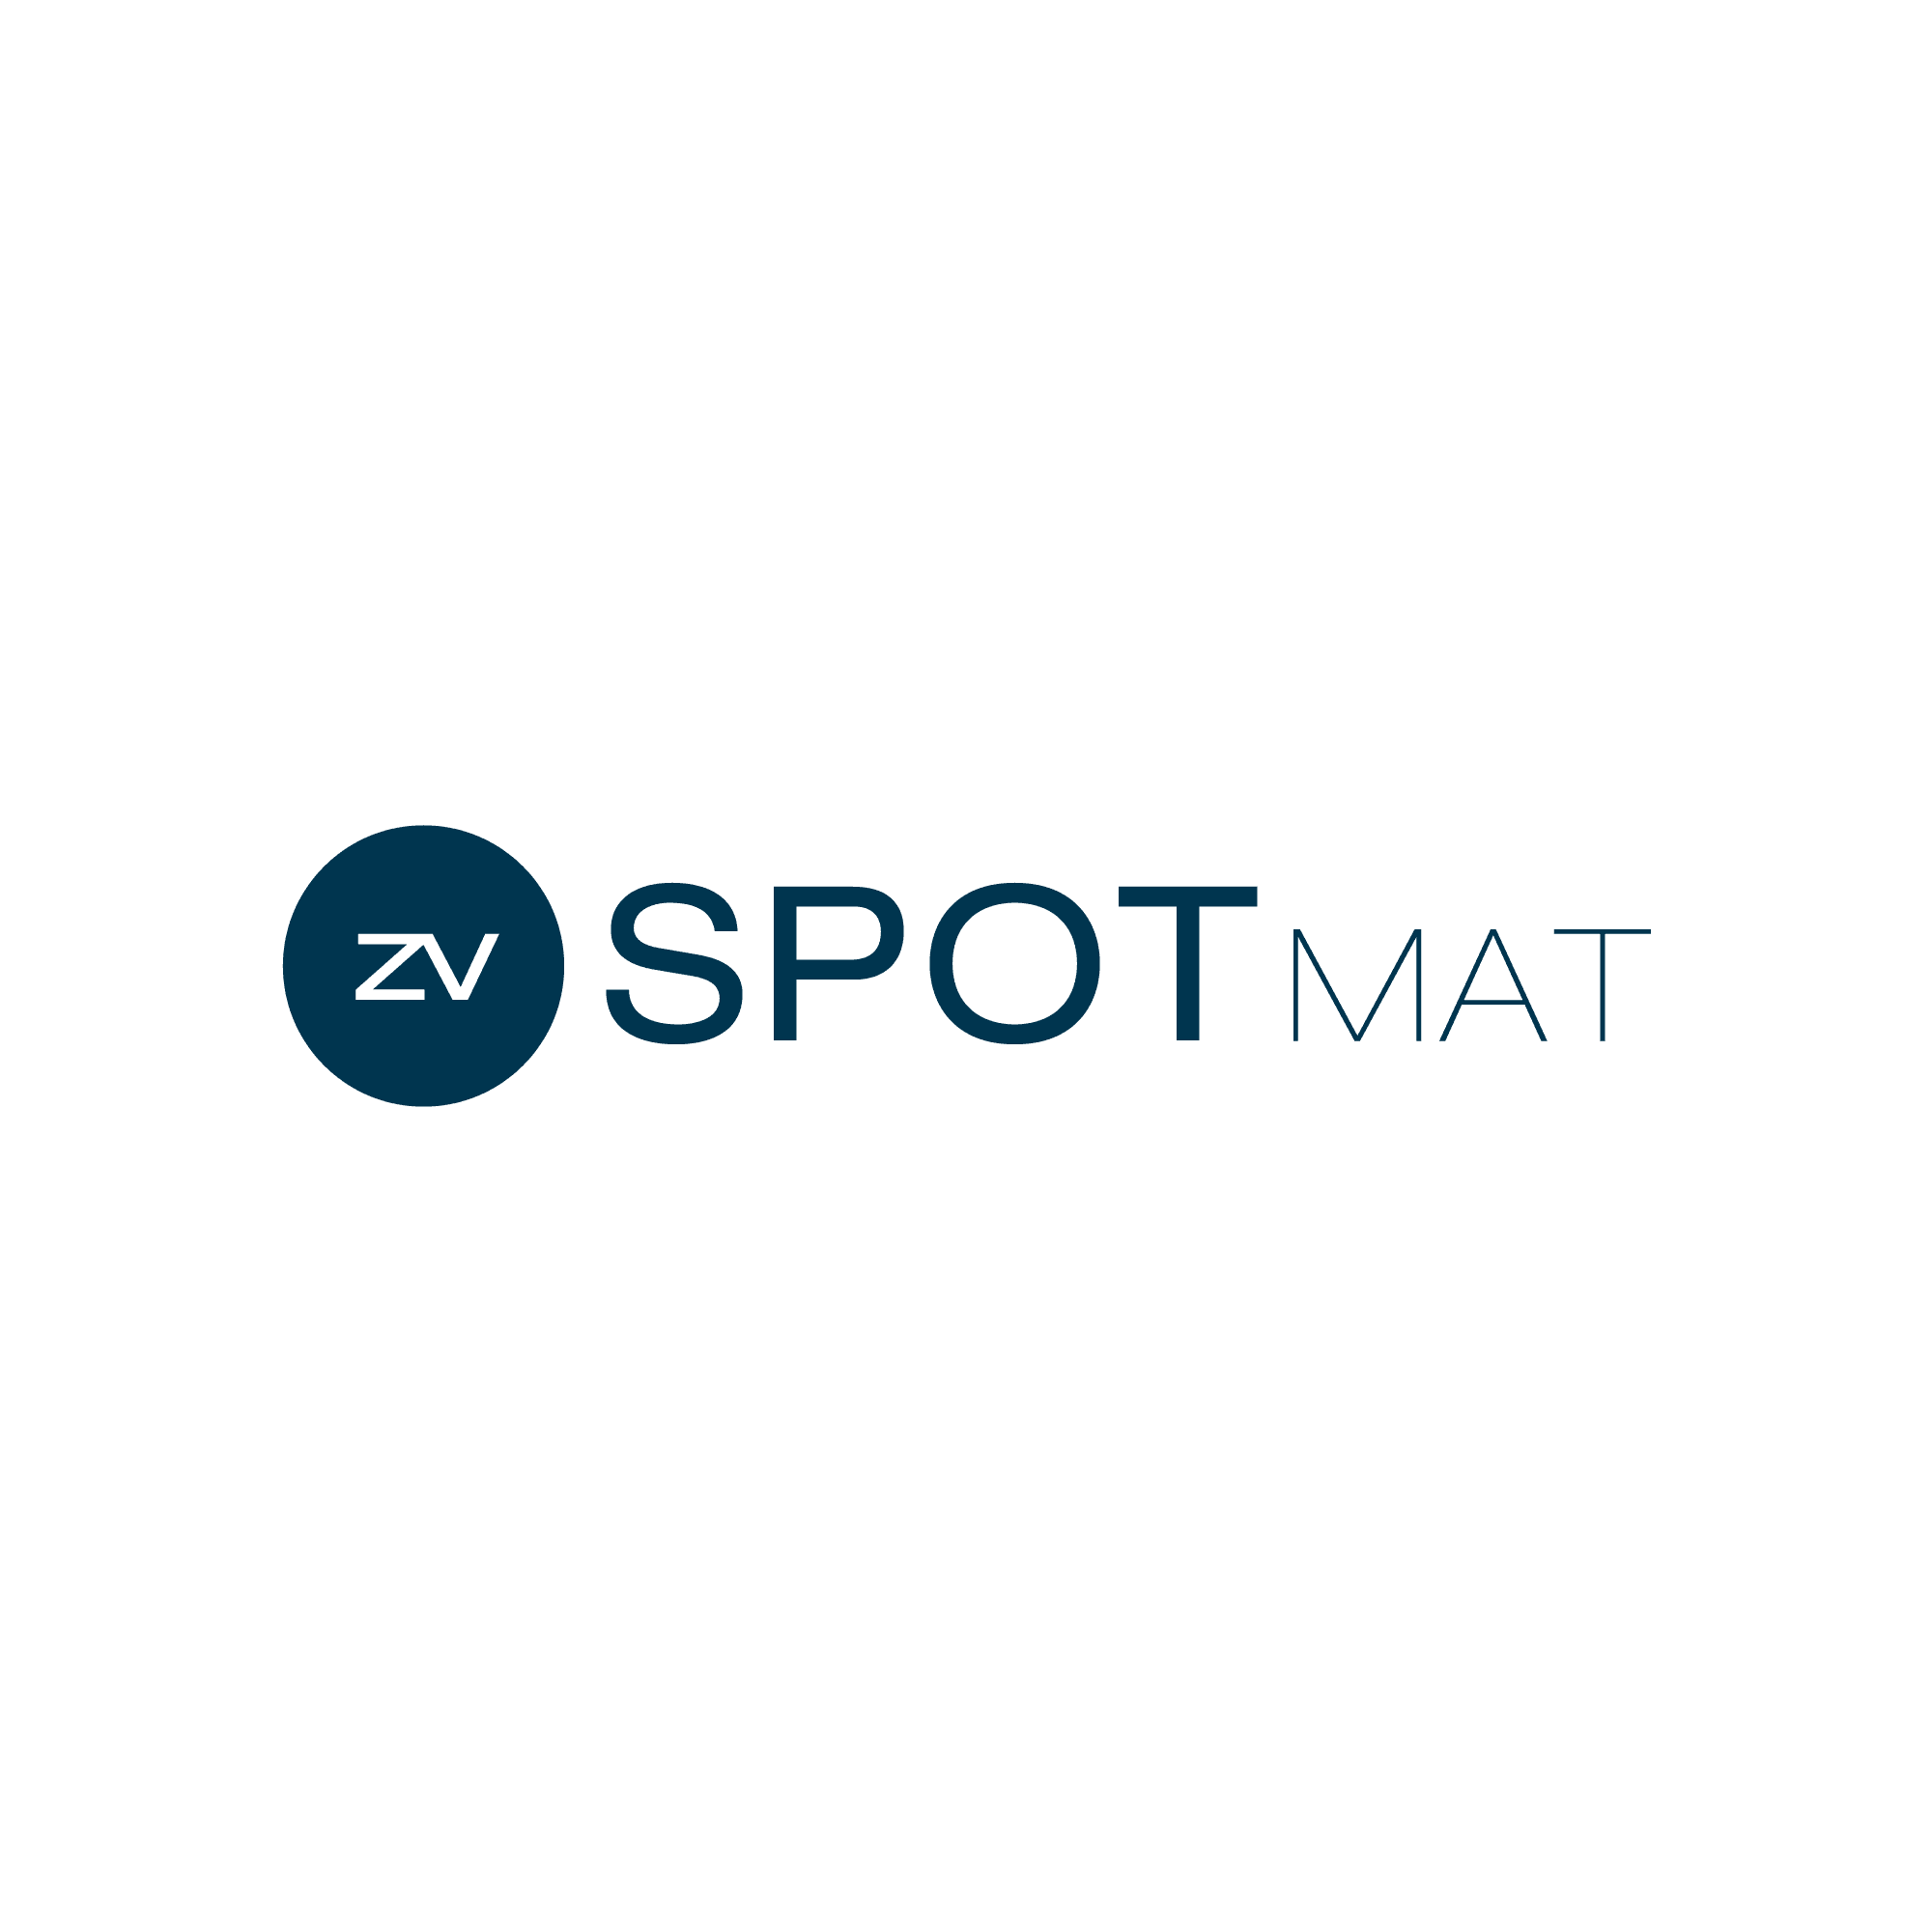 Es ist das Logo von SPoT für Materialstammdaten zu sehen.